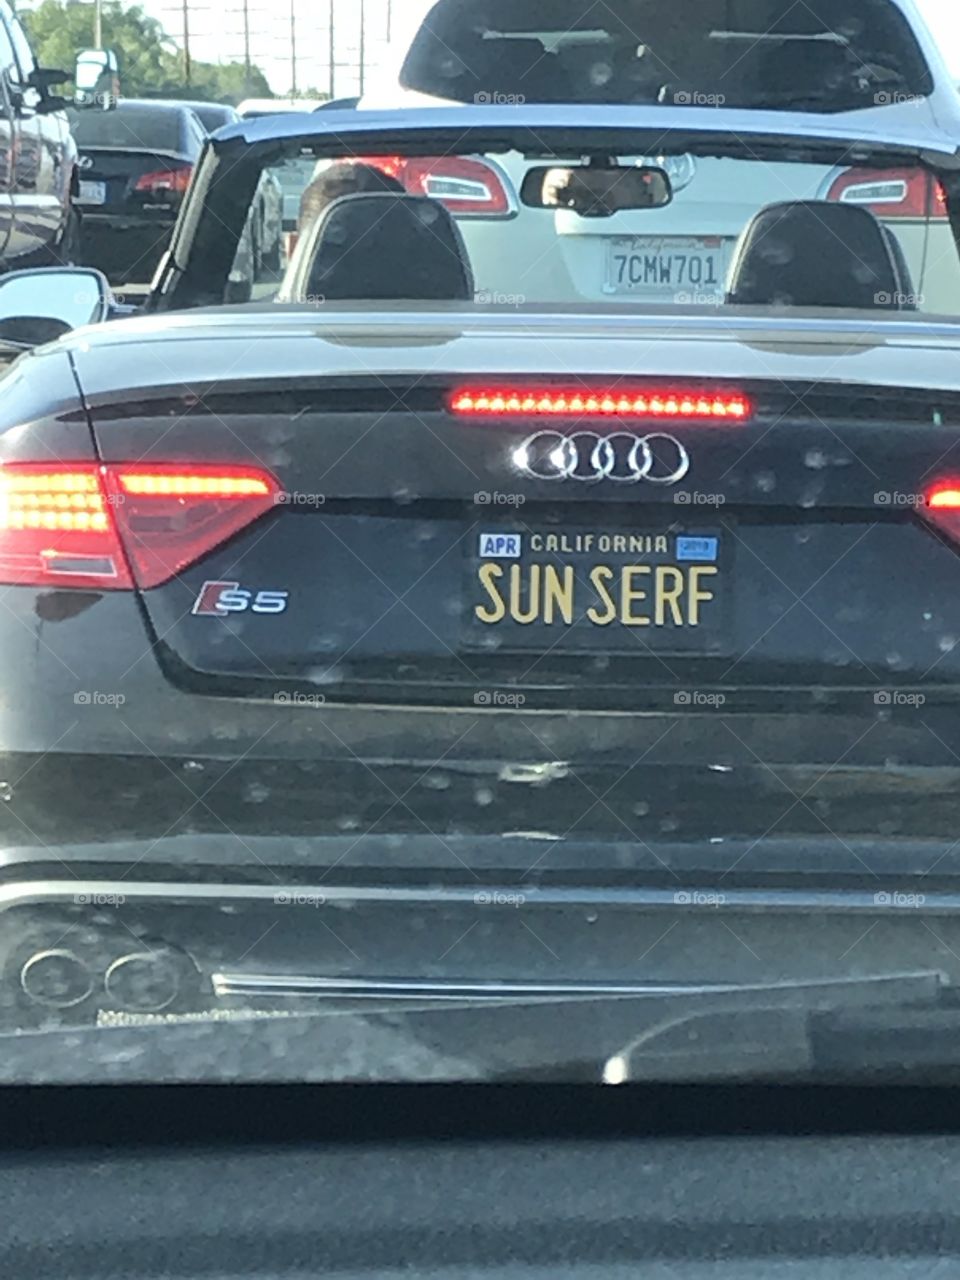 SUN SERF in California license plate